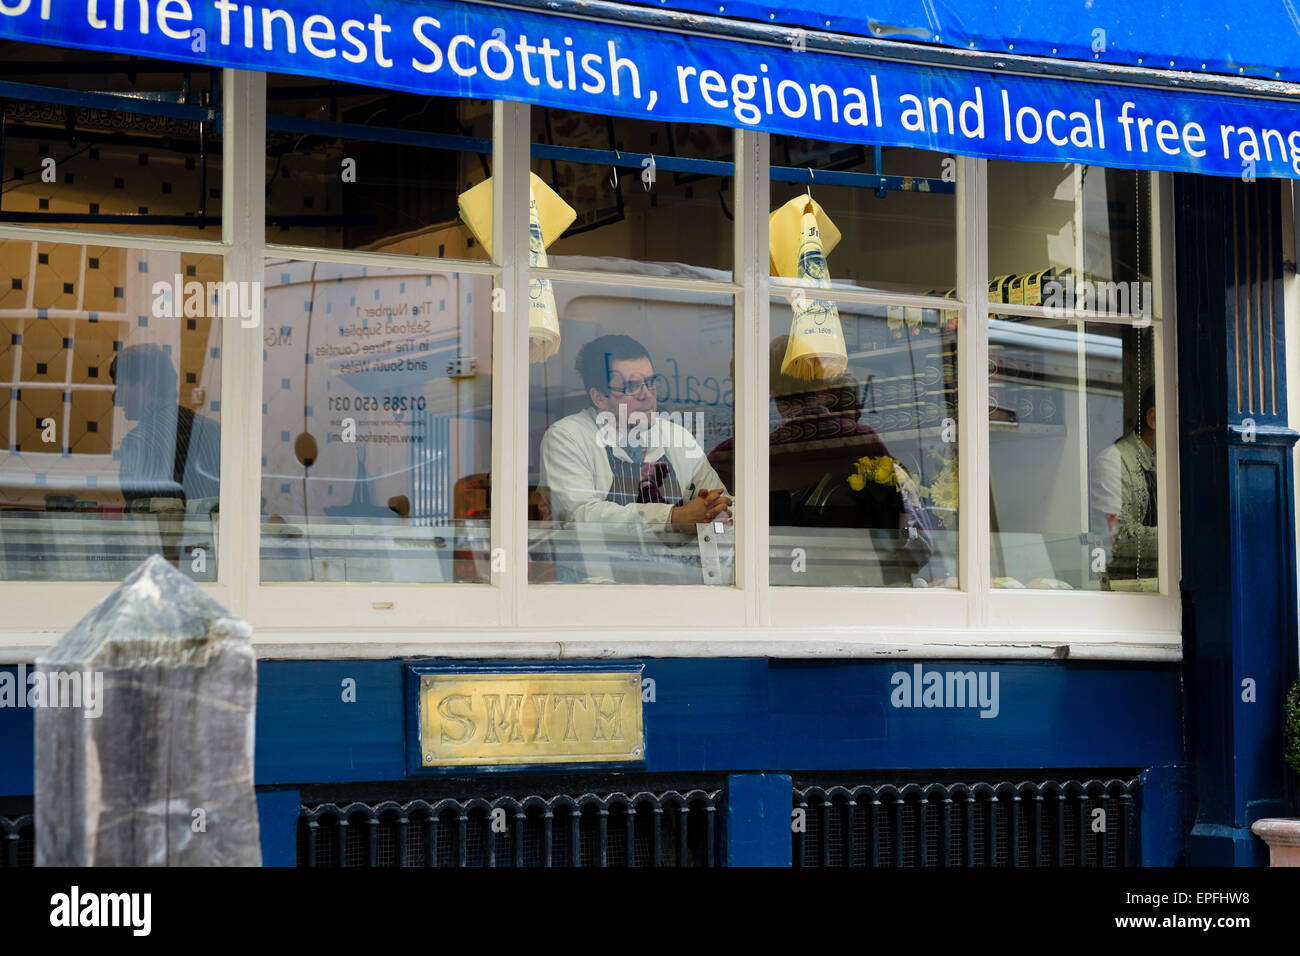 Extérieur, Jesse Smith, les bouchers traditionnels shop , rue de Blackjack, Cirencester, Gloucestershire, Angleterre, Royaume-Uni Banque D'Images